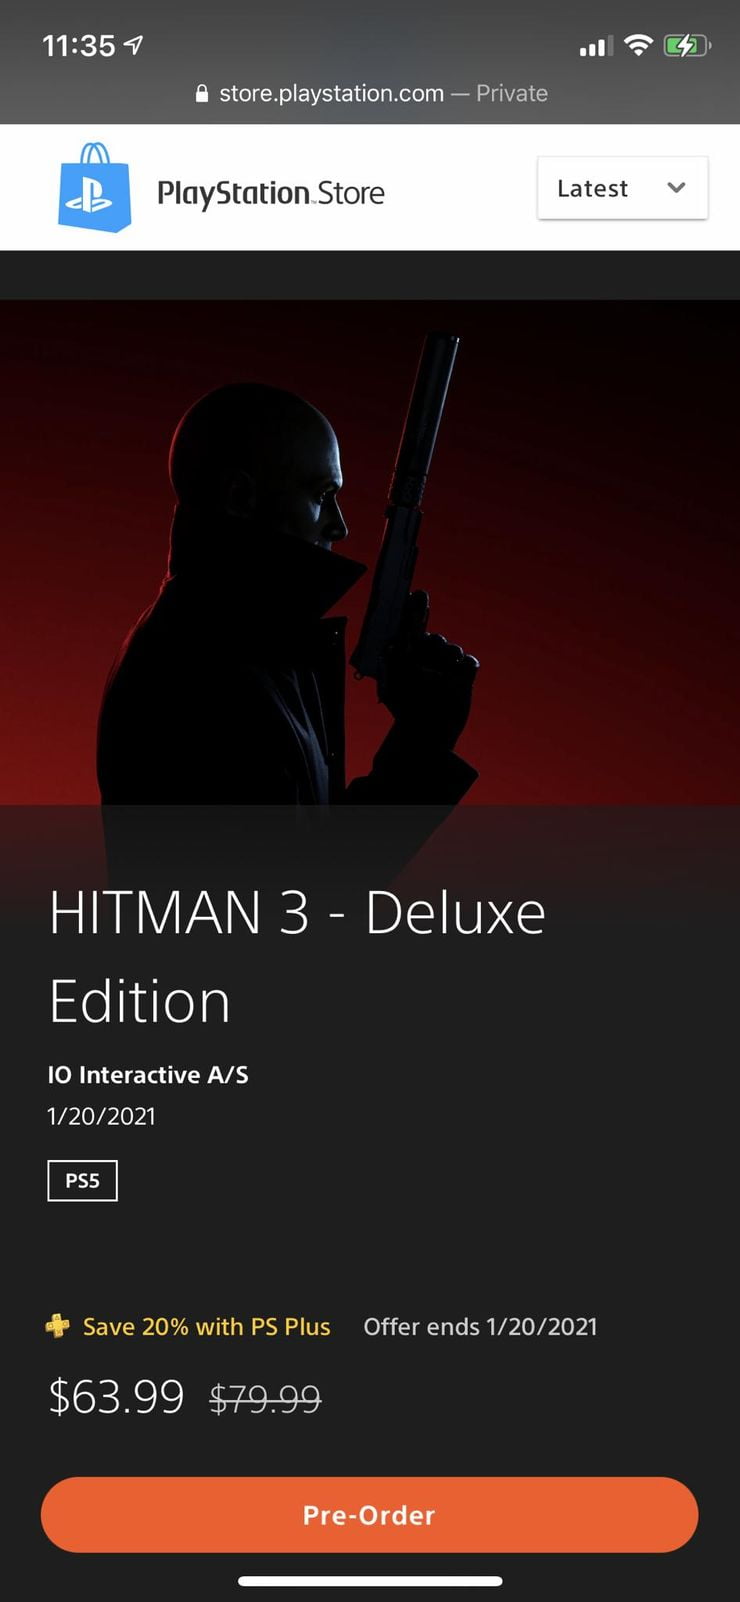 Hitman 3 Deluxe Sale